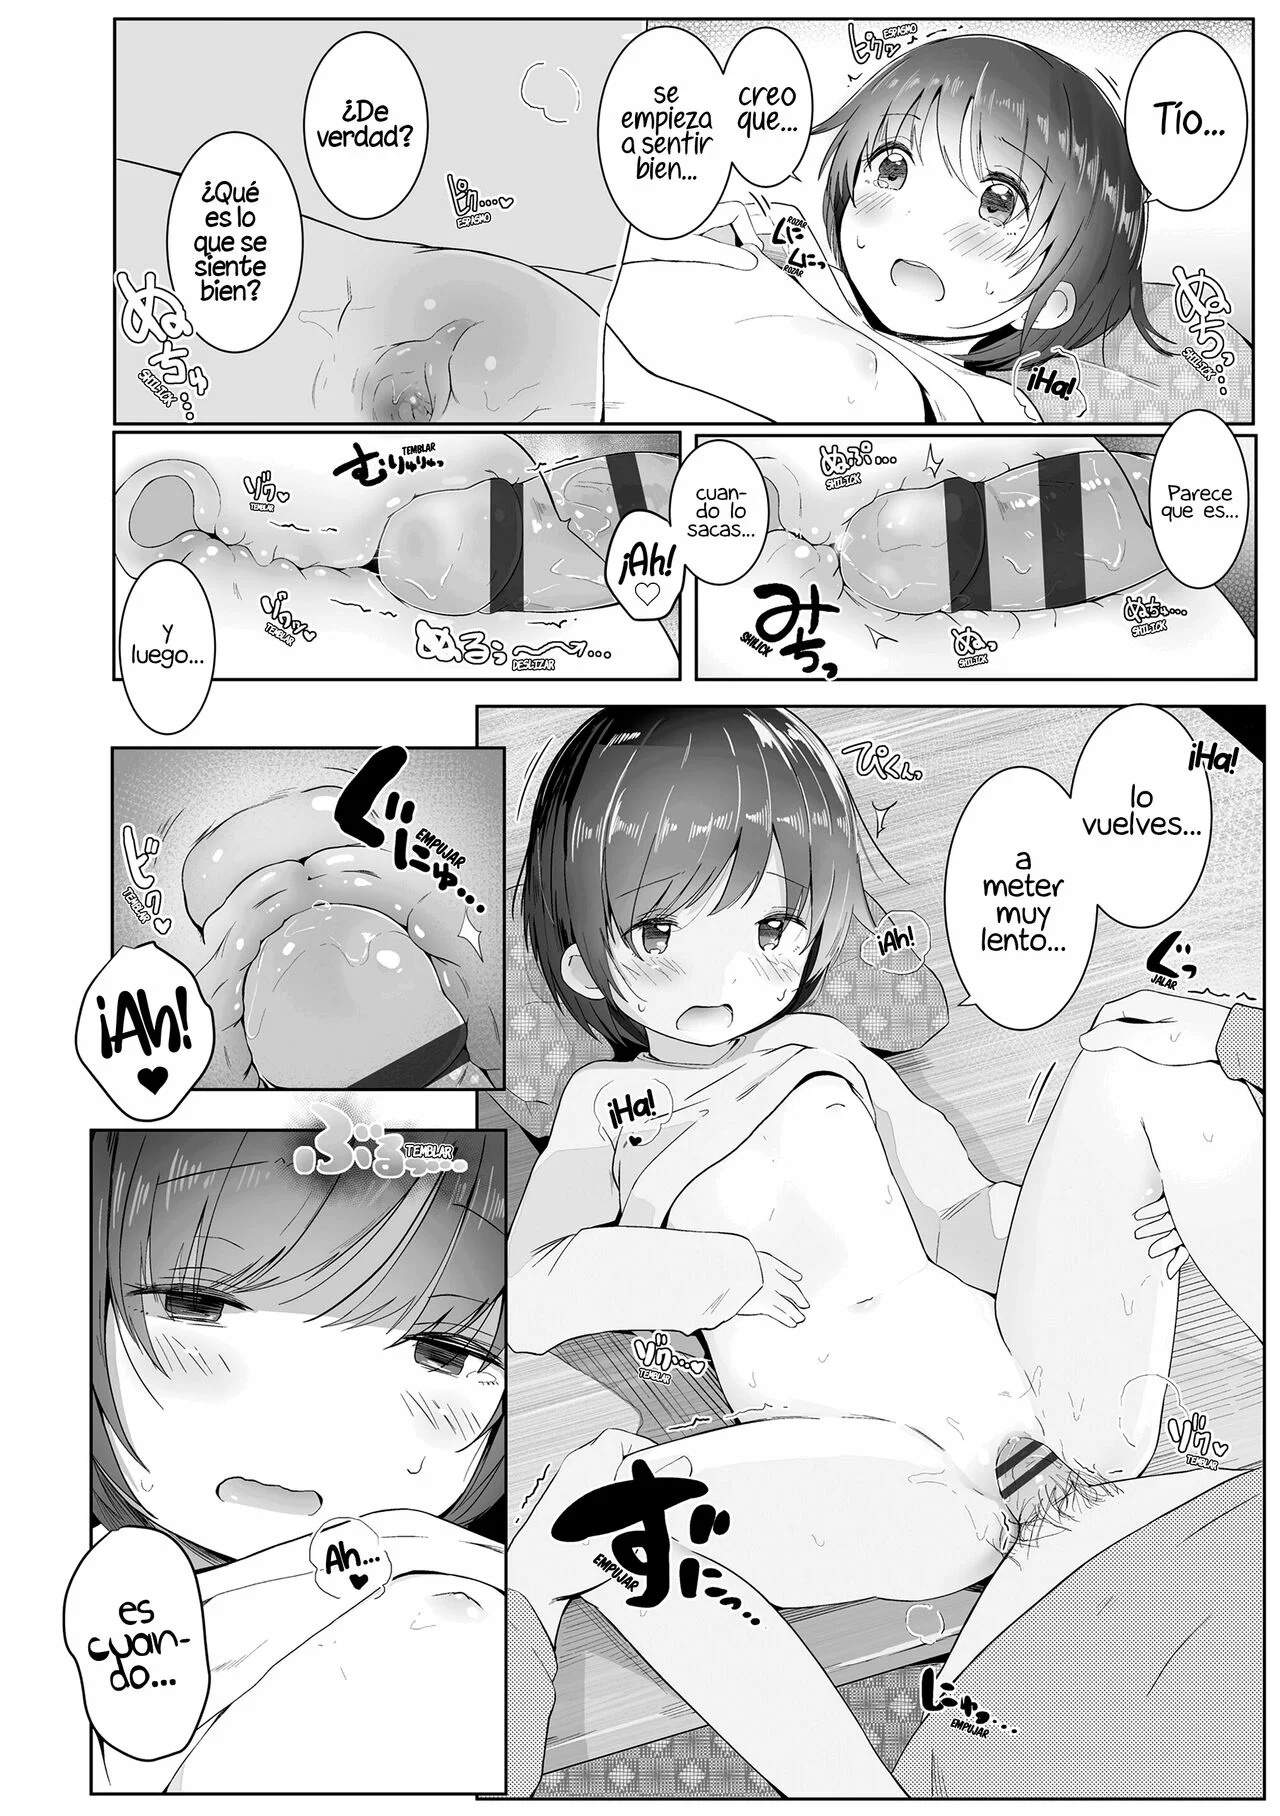 Un kotatsu para el invierno - 17